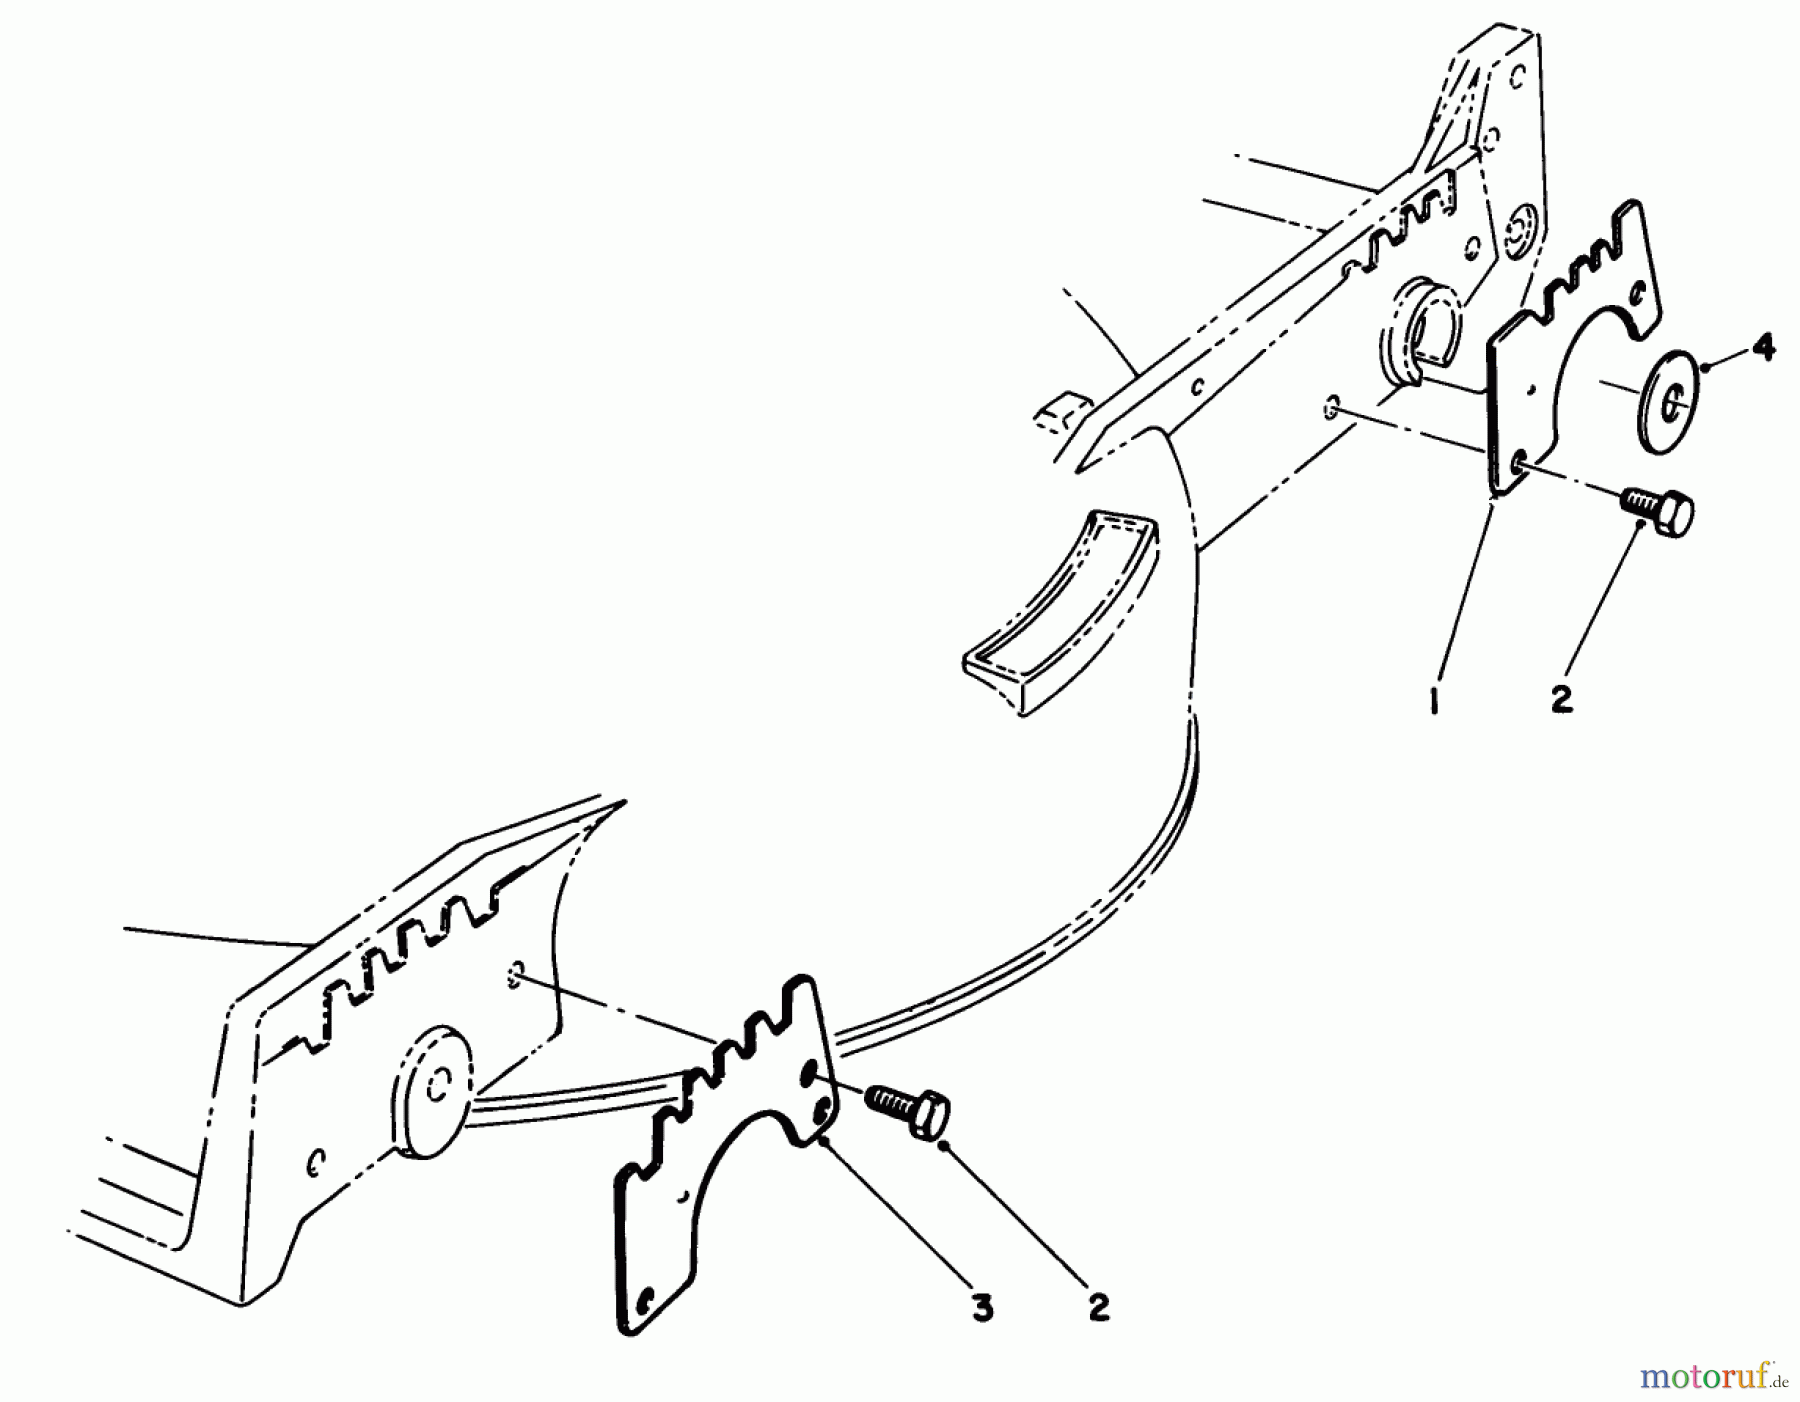  Toro Neu Mowers, Walk-Behind Seite 1 20588C - Toro Lawnmower, 1988 (8000001-8999999) WEAR PLATE KIT MODEL NO. 49-4080 (OPTIONAL)